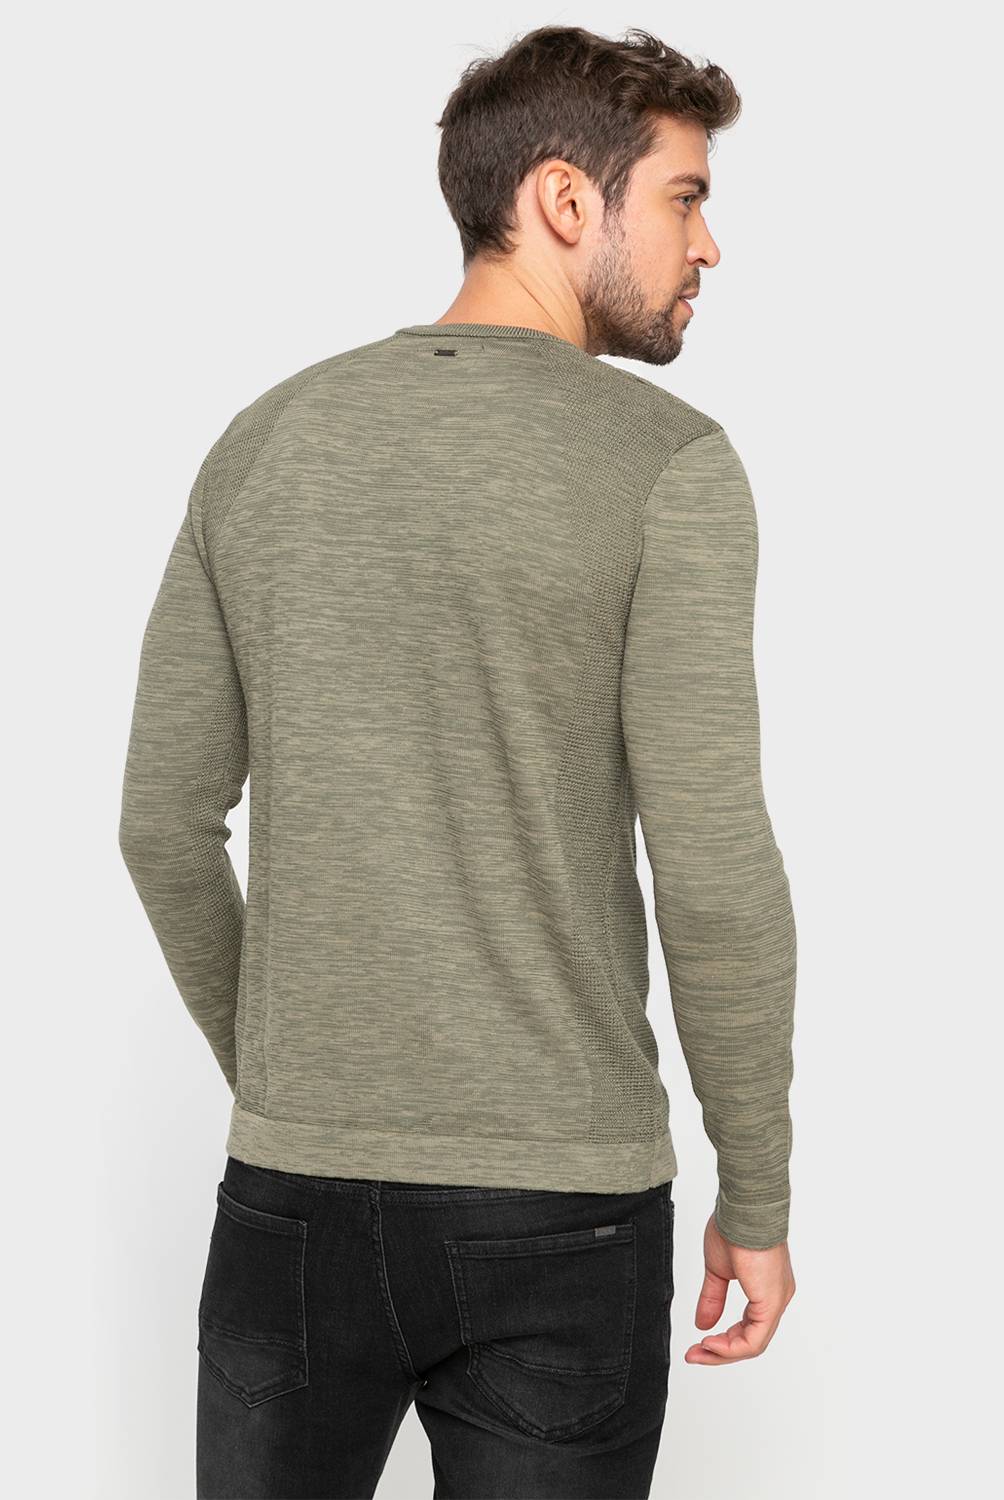 Mossimo - Sweater de Algodón Hombre